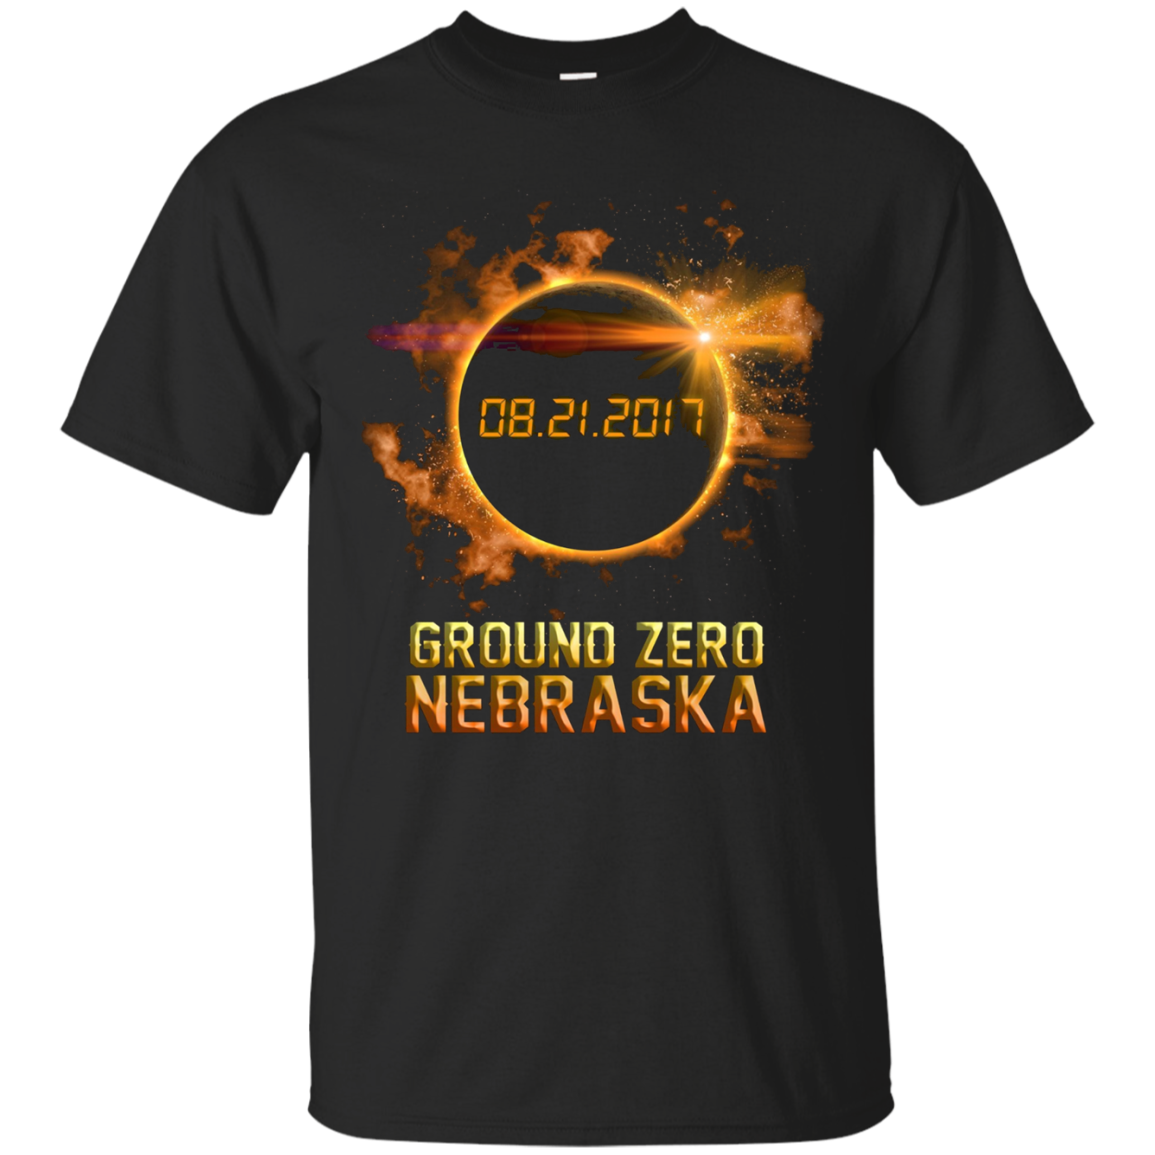 Nebraska Ground Zero Solar Eclipse 2017 Tshirt